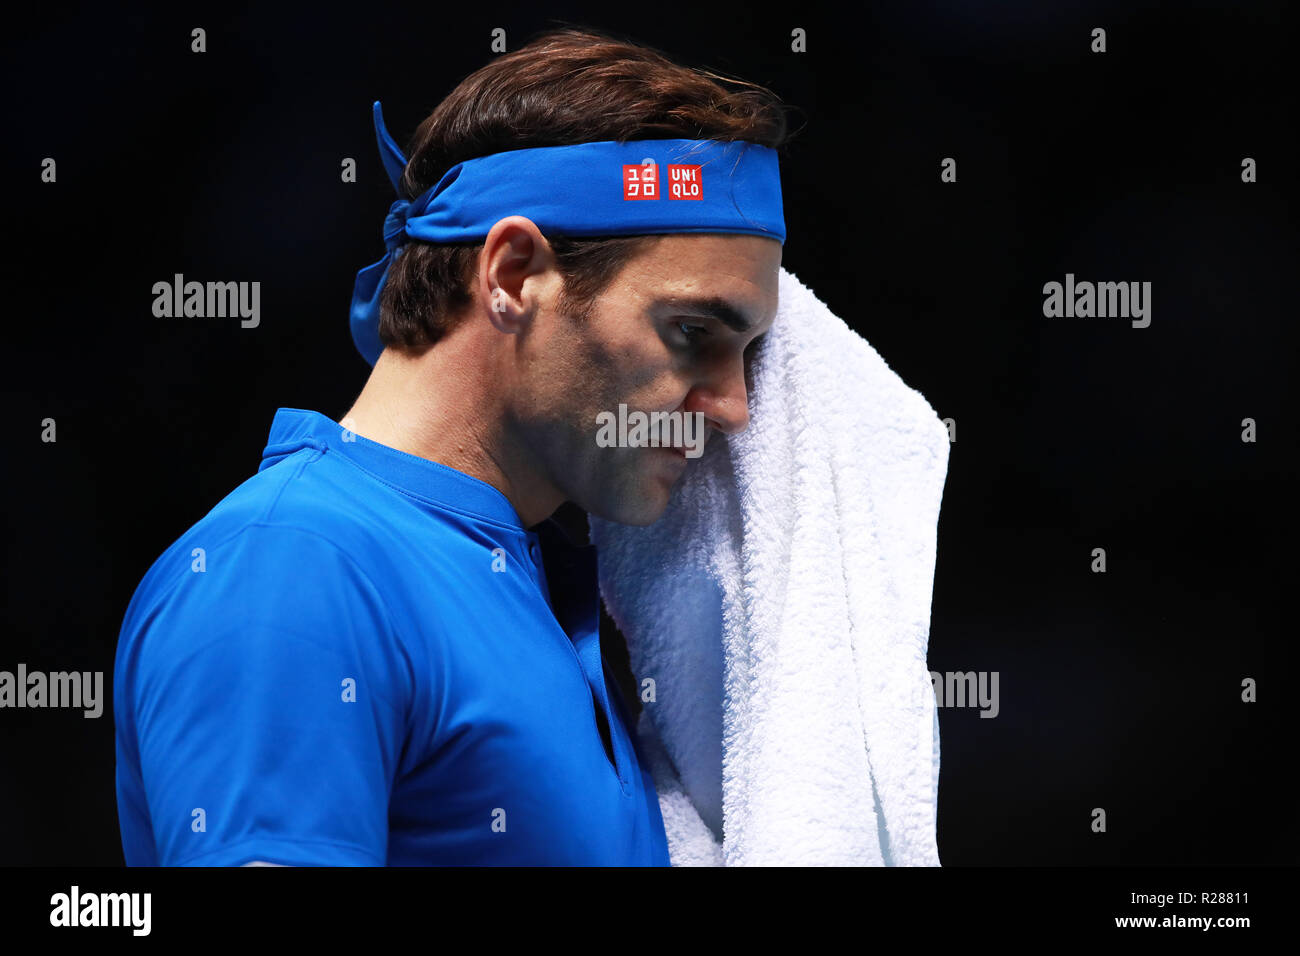 17 novembre 2018, O2 Arena, London, England ; Nitto ATP Tennis Finale, Roger Federer (SUI) off lingettes pendant son match de demi-finale contre Alexander Zverev (GER) Banque D'Images